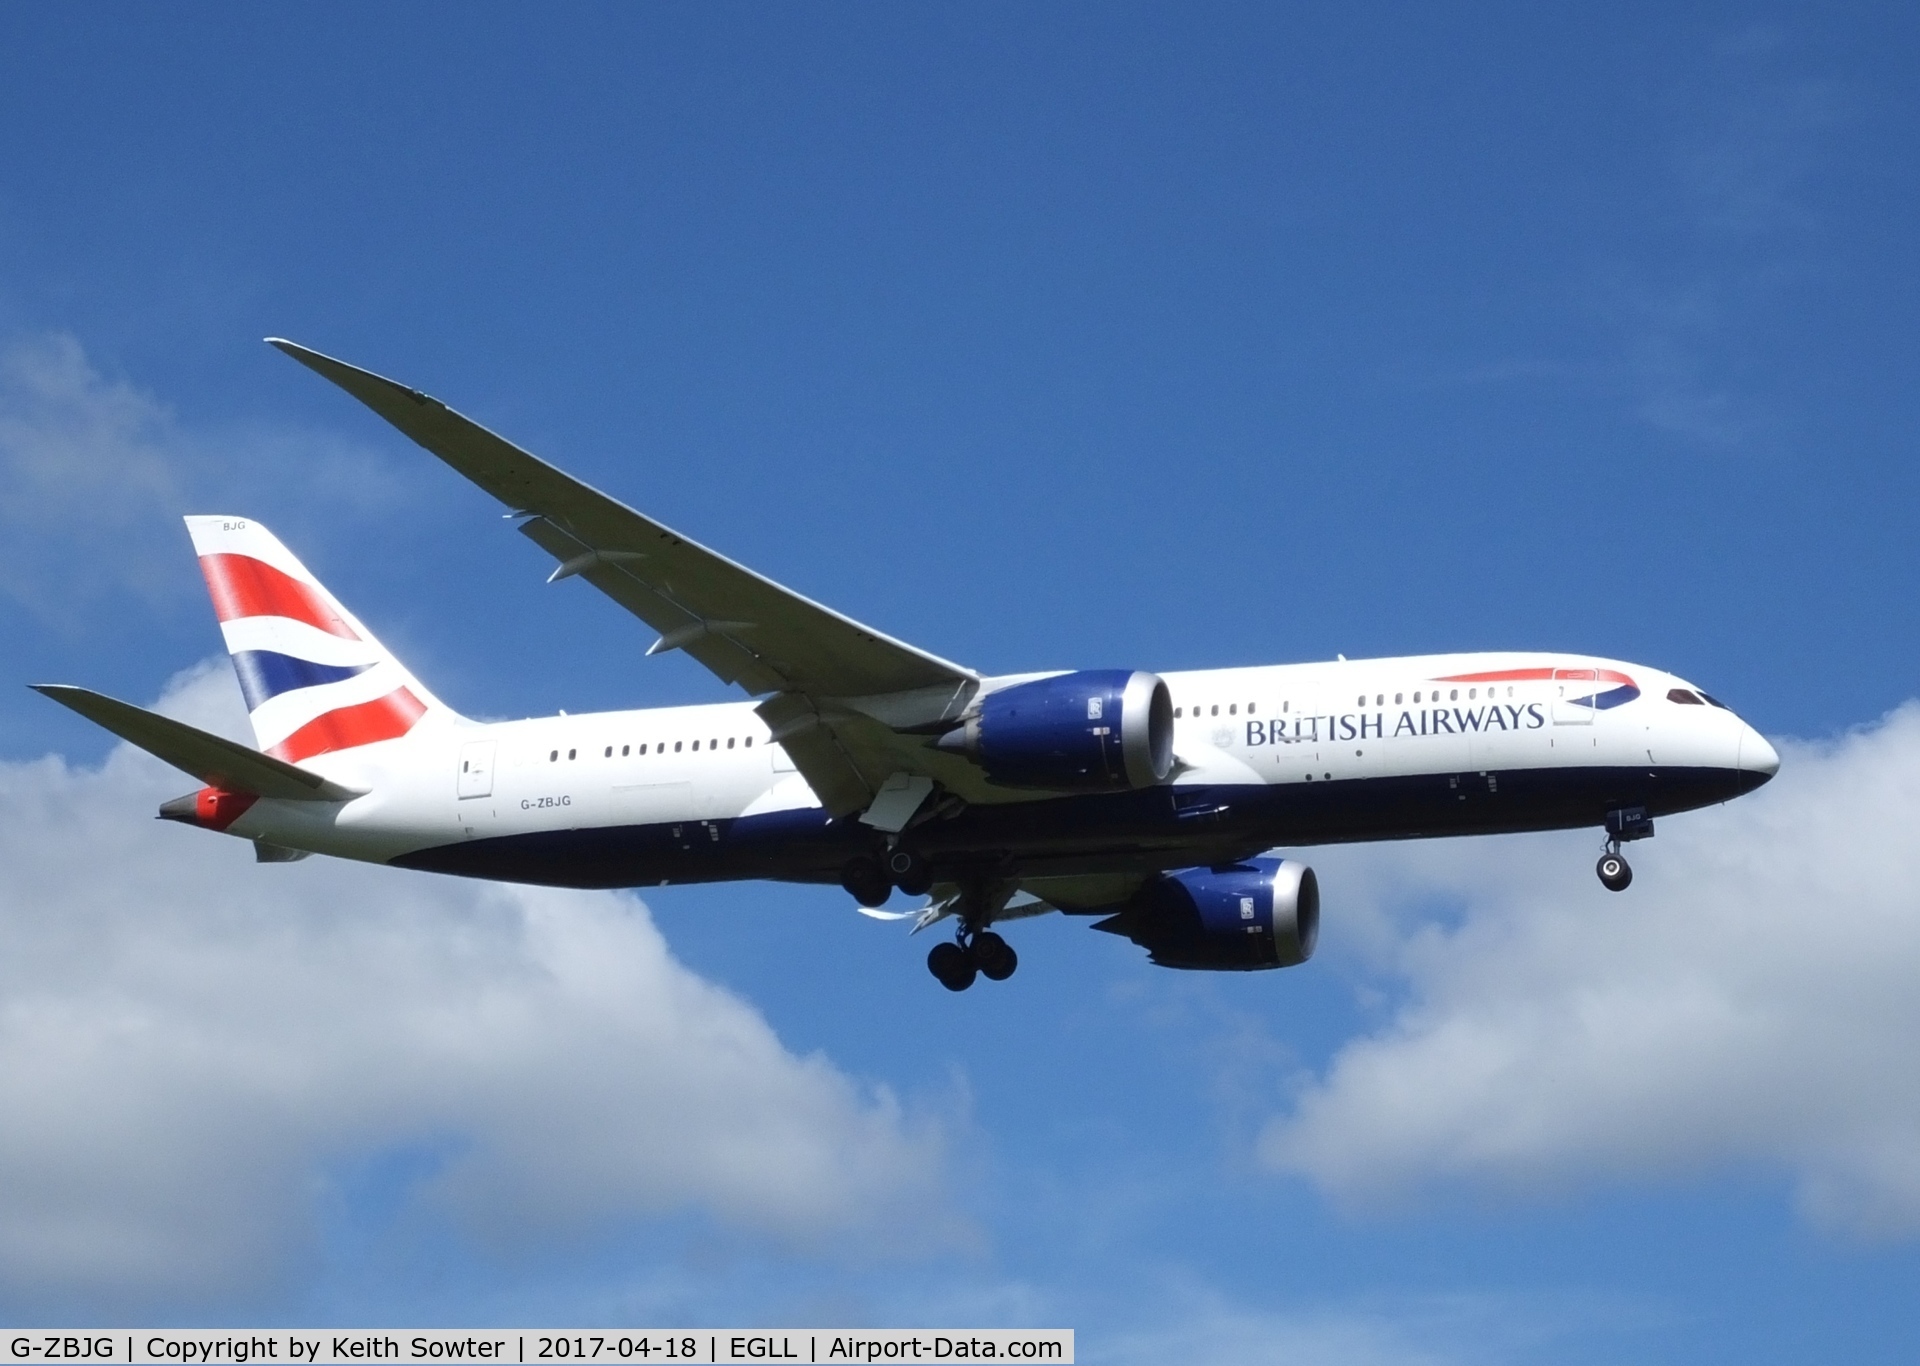 G-ZBJG, 2014 Boeing 787-8 Dreamliner C/N 38614, Short finals to land Heathrow 09L